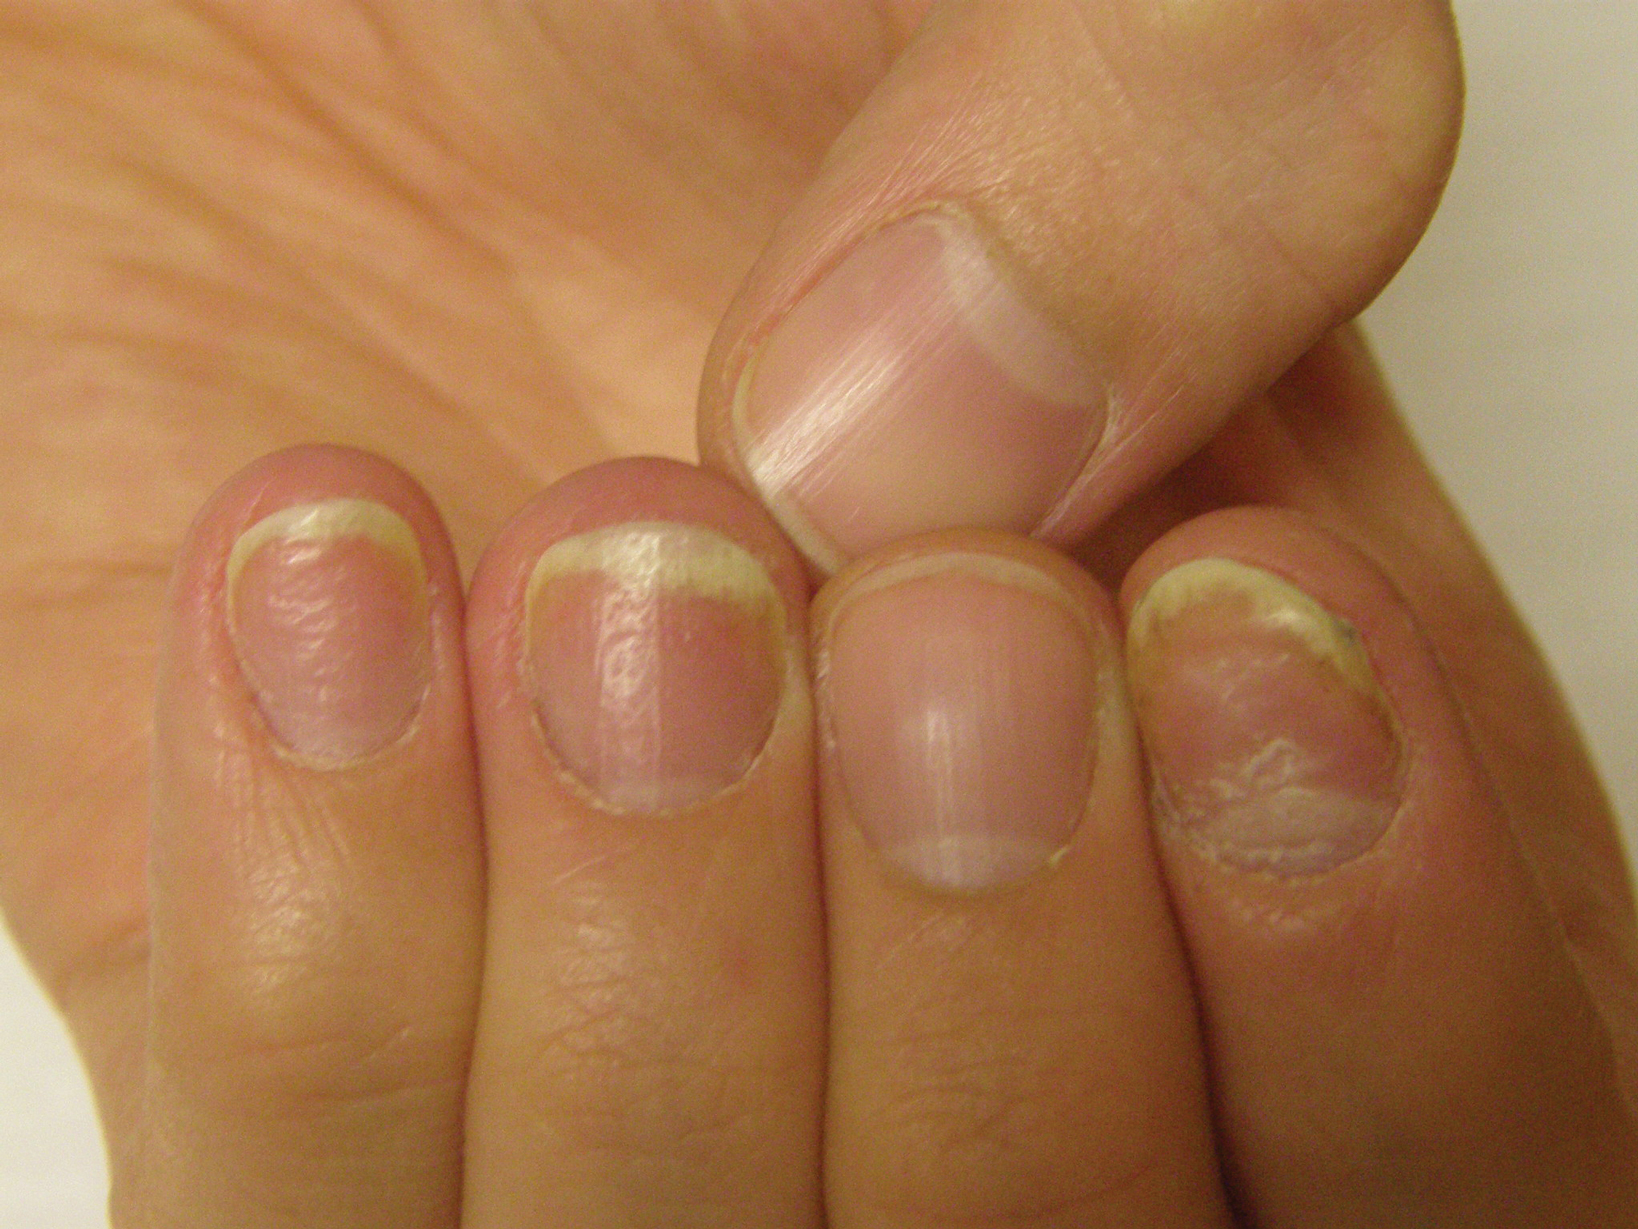 nail psoriasis or fungus